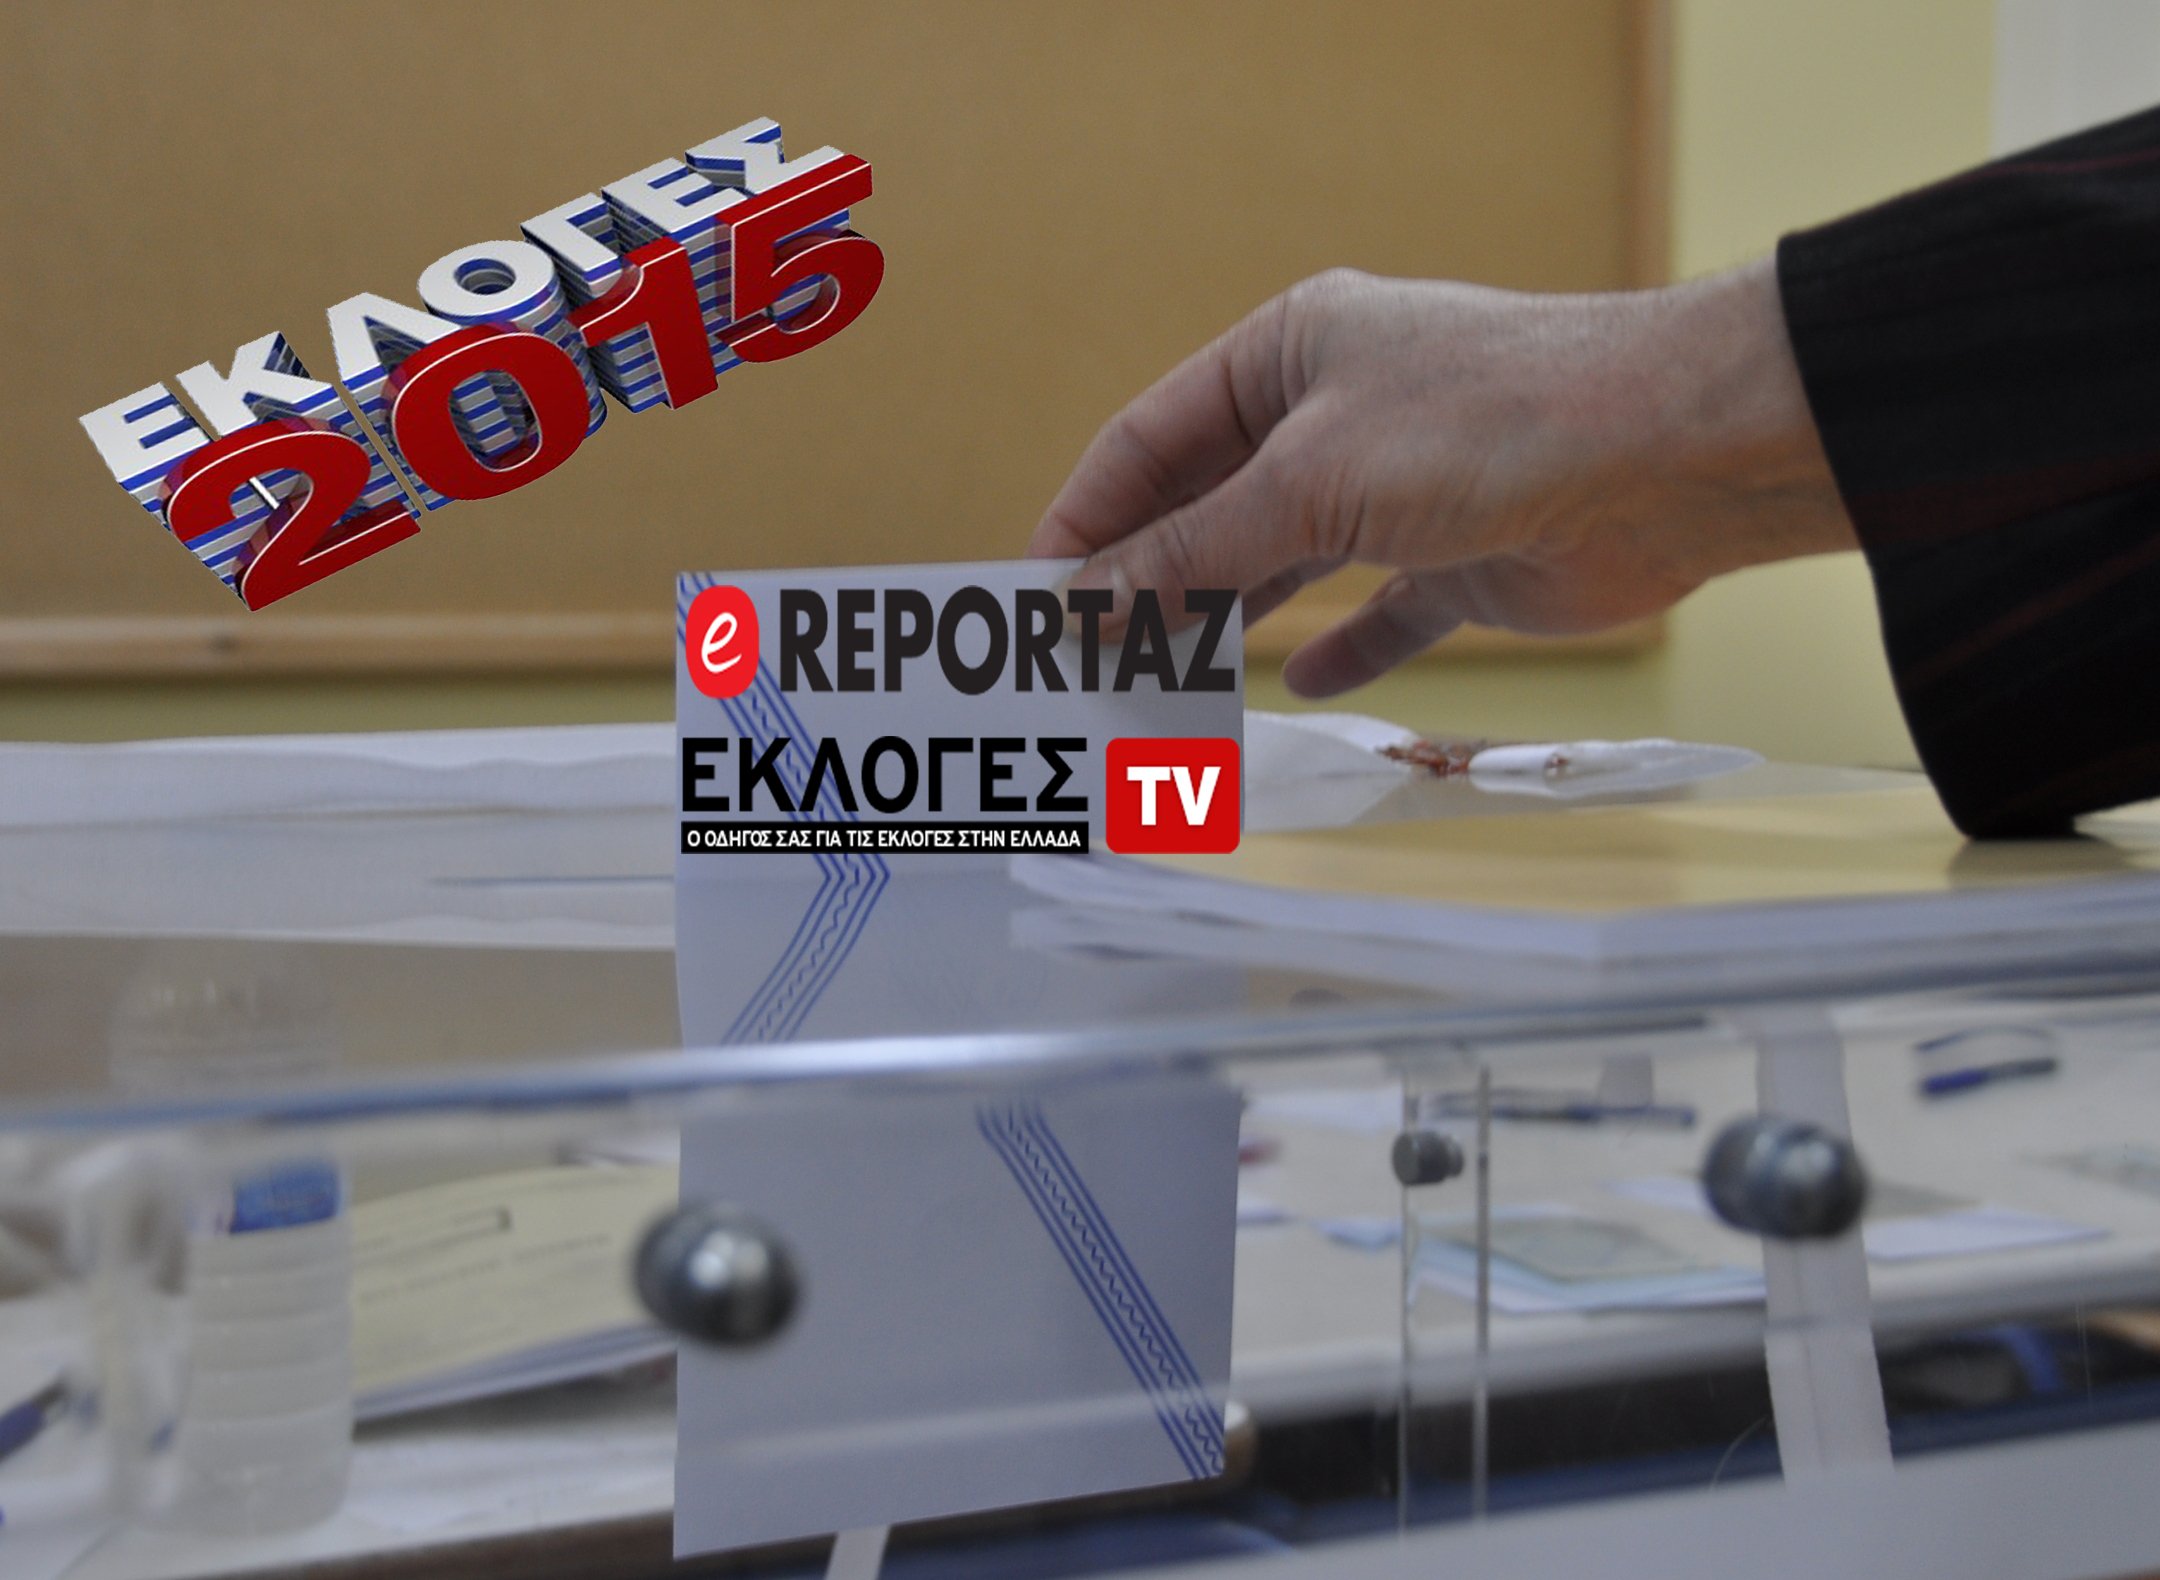 Τα αποτελέσματα των βουλευτικών εκλογών 2015 στο ereportaz.gr